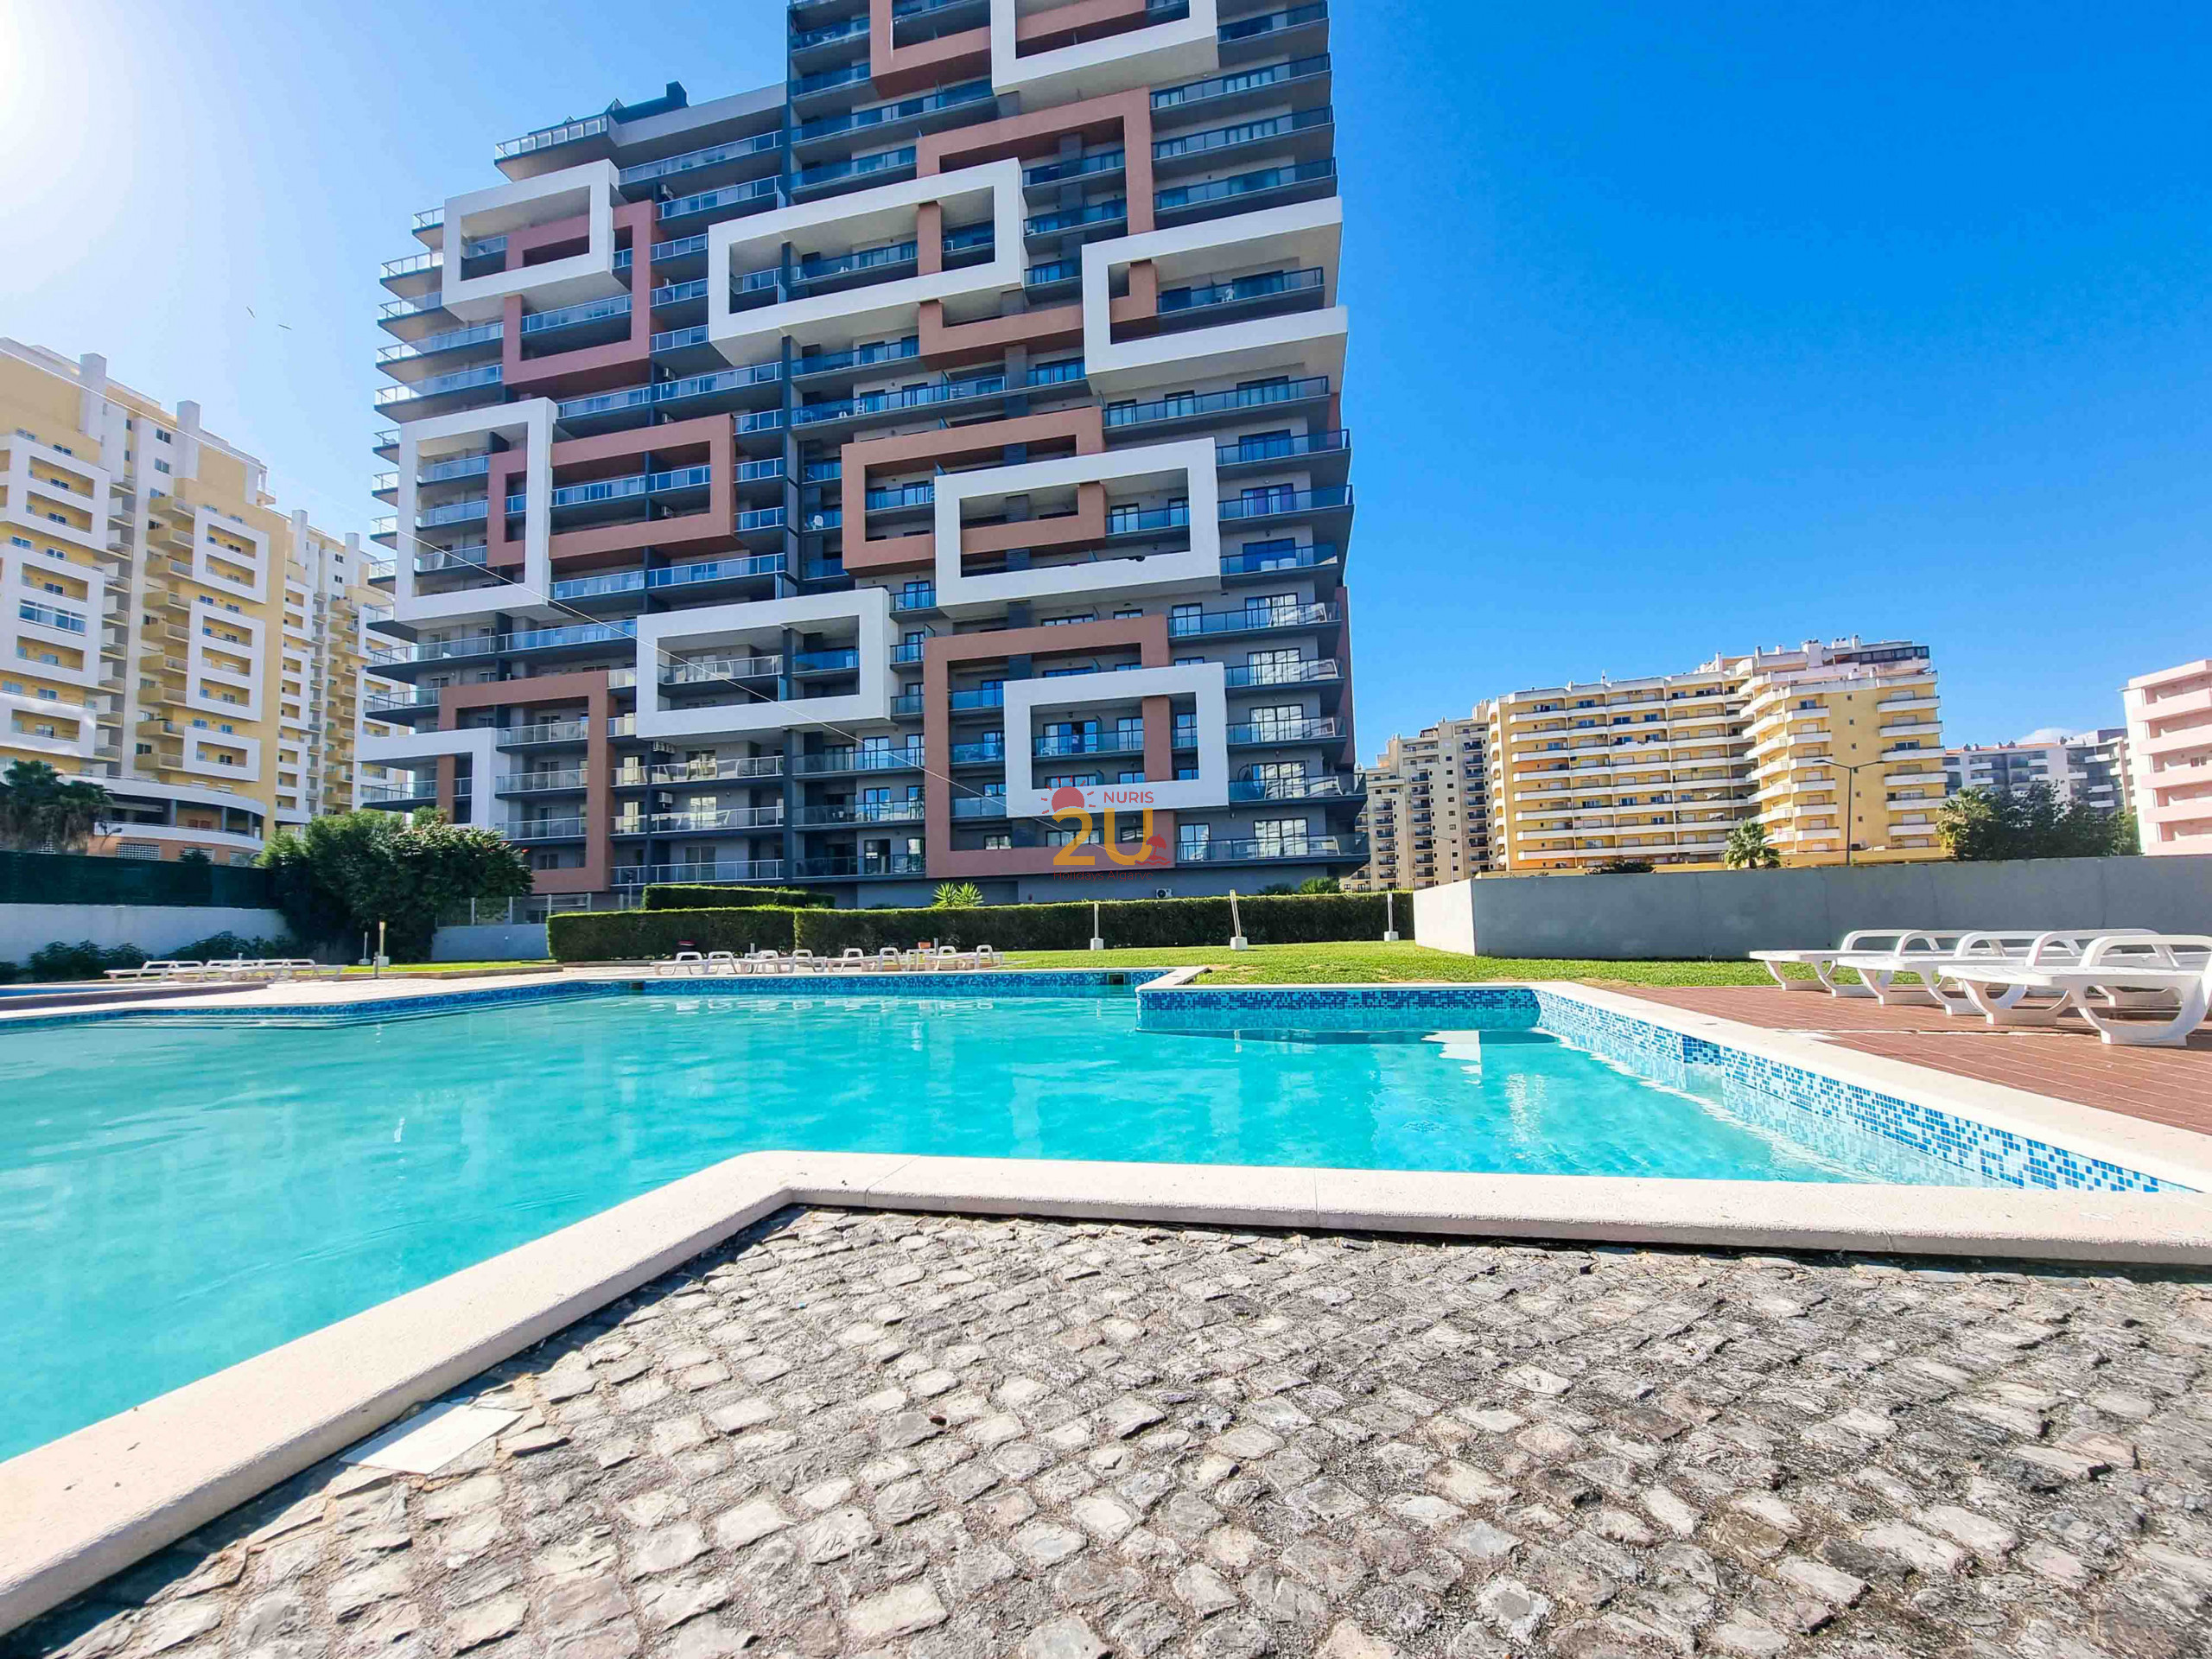  à Portimão -  Praia Rocha Tower Lovely Apartment